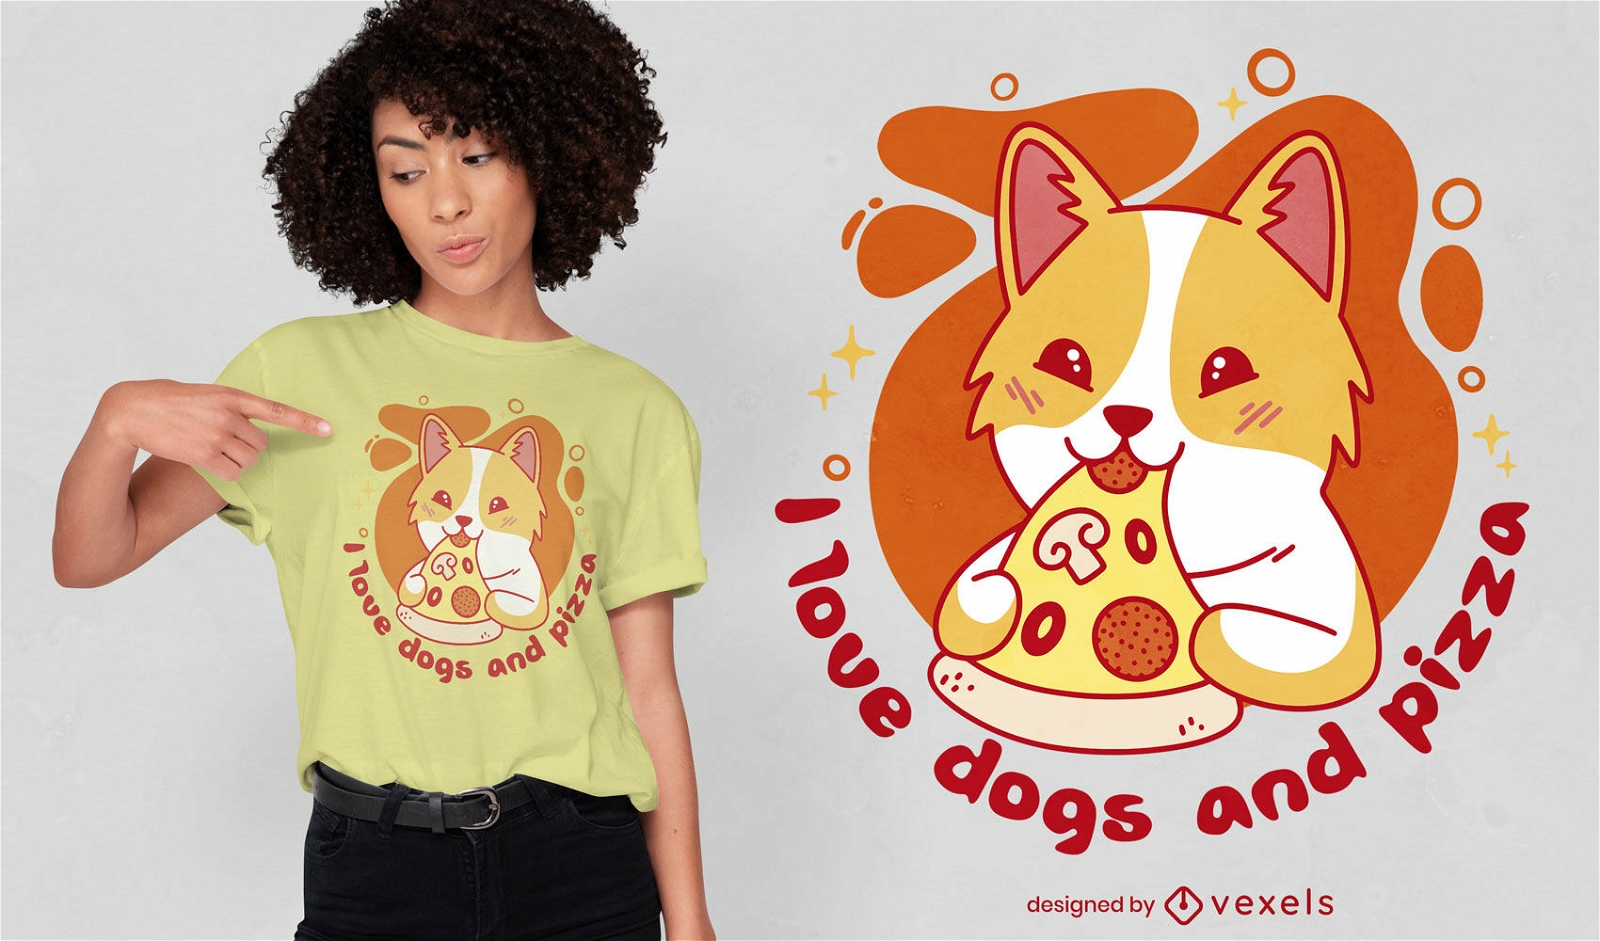 Dise?o de camiseta para amantes de los perros y la pizza.